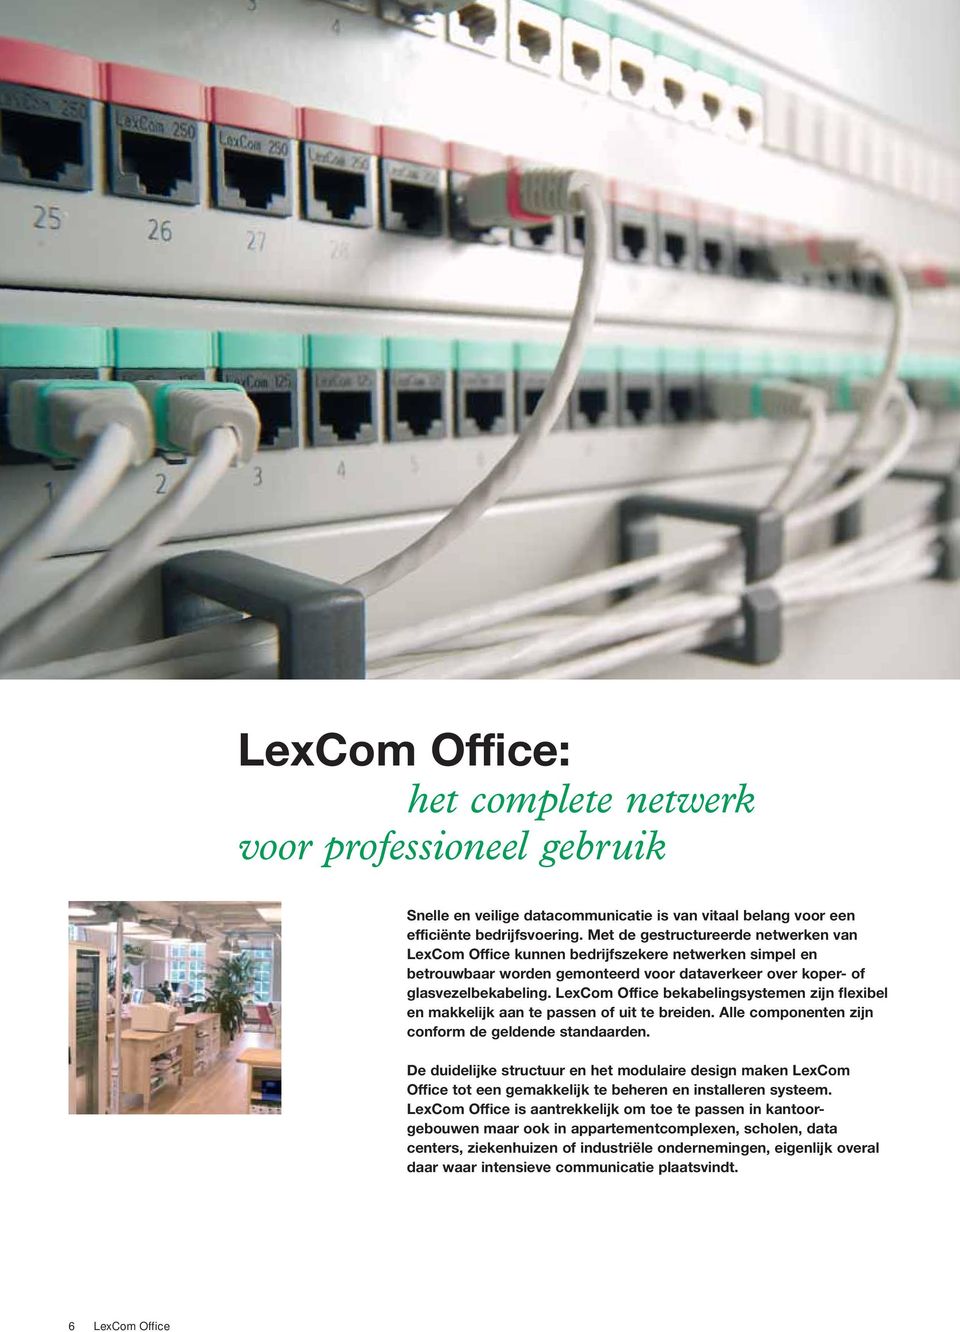 LexCom Office bekabelingsystemen zijn flexibel en makkelijk aan te passen of uit te breiden. Alle componenten zijn conform de geldende standaarden.